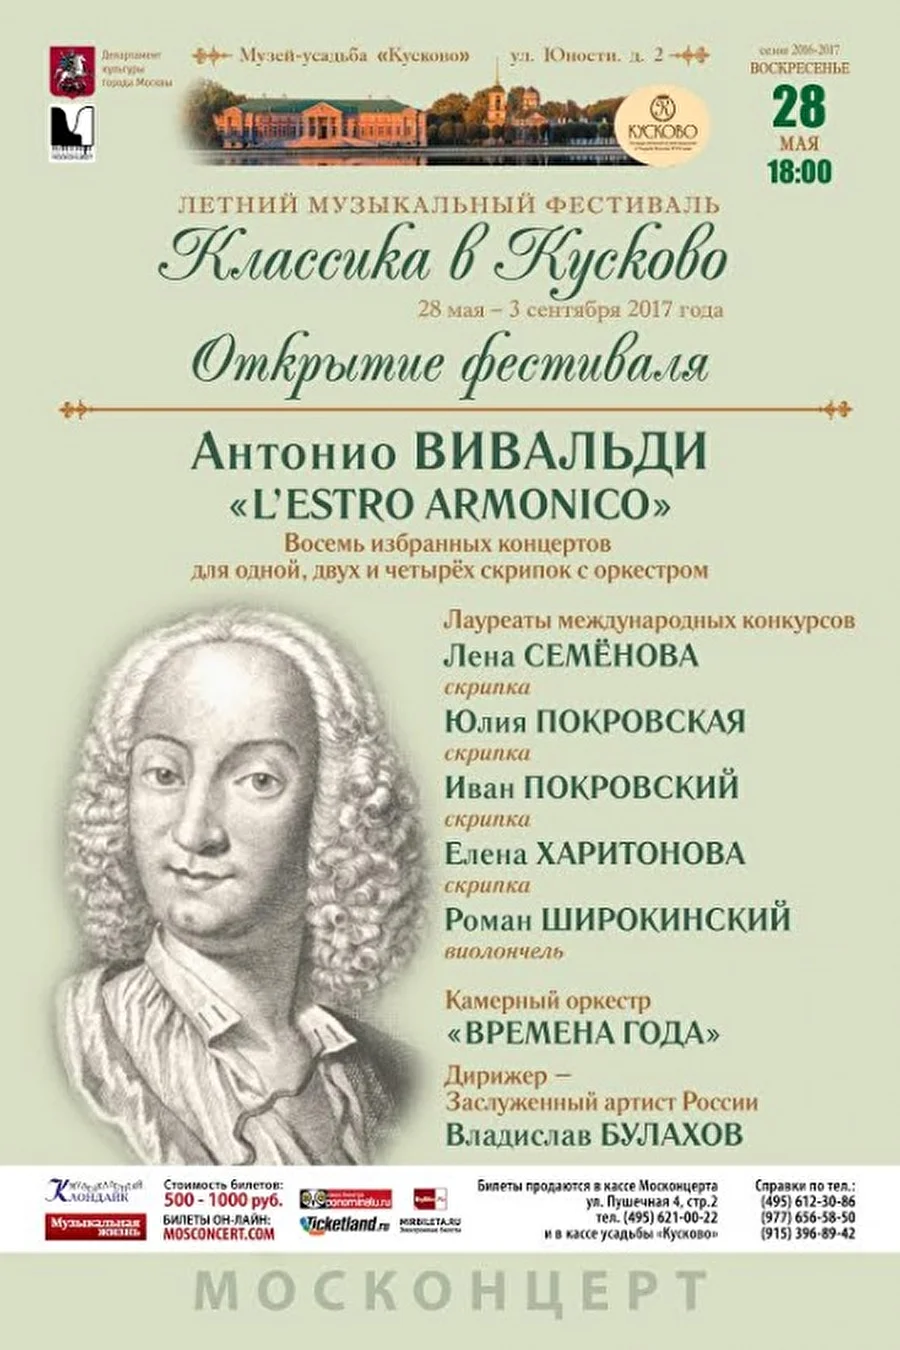 Двадцать концертов фестиваля «Классика в Кусково» пройдут летом в музее-усадьбе